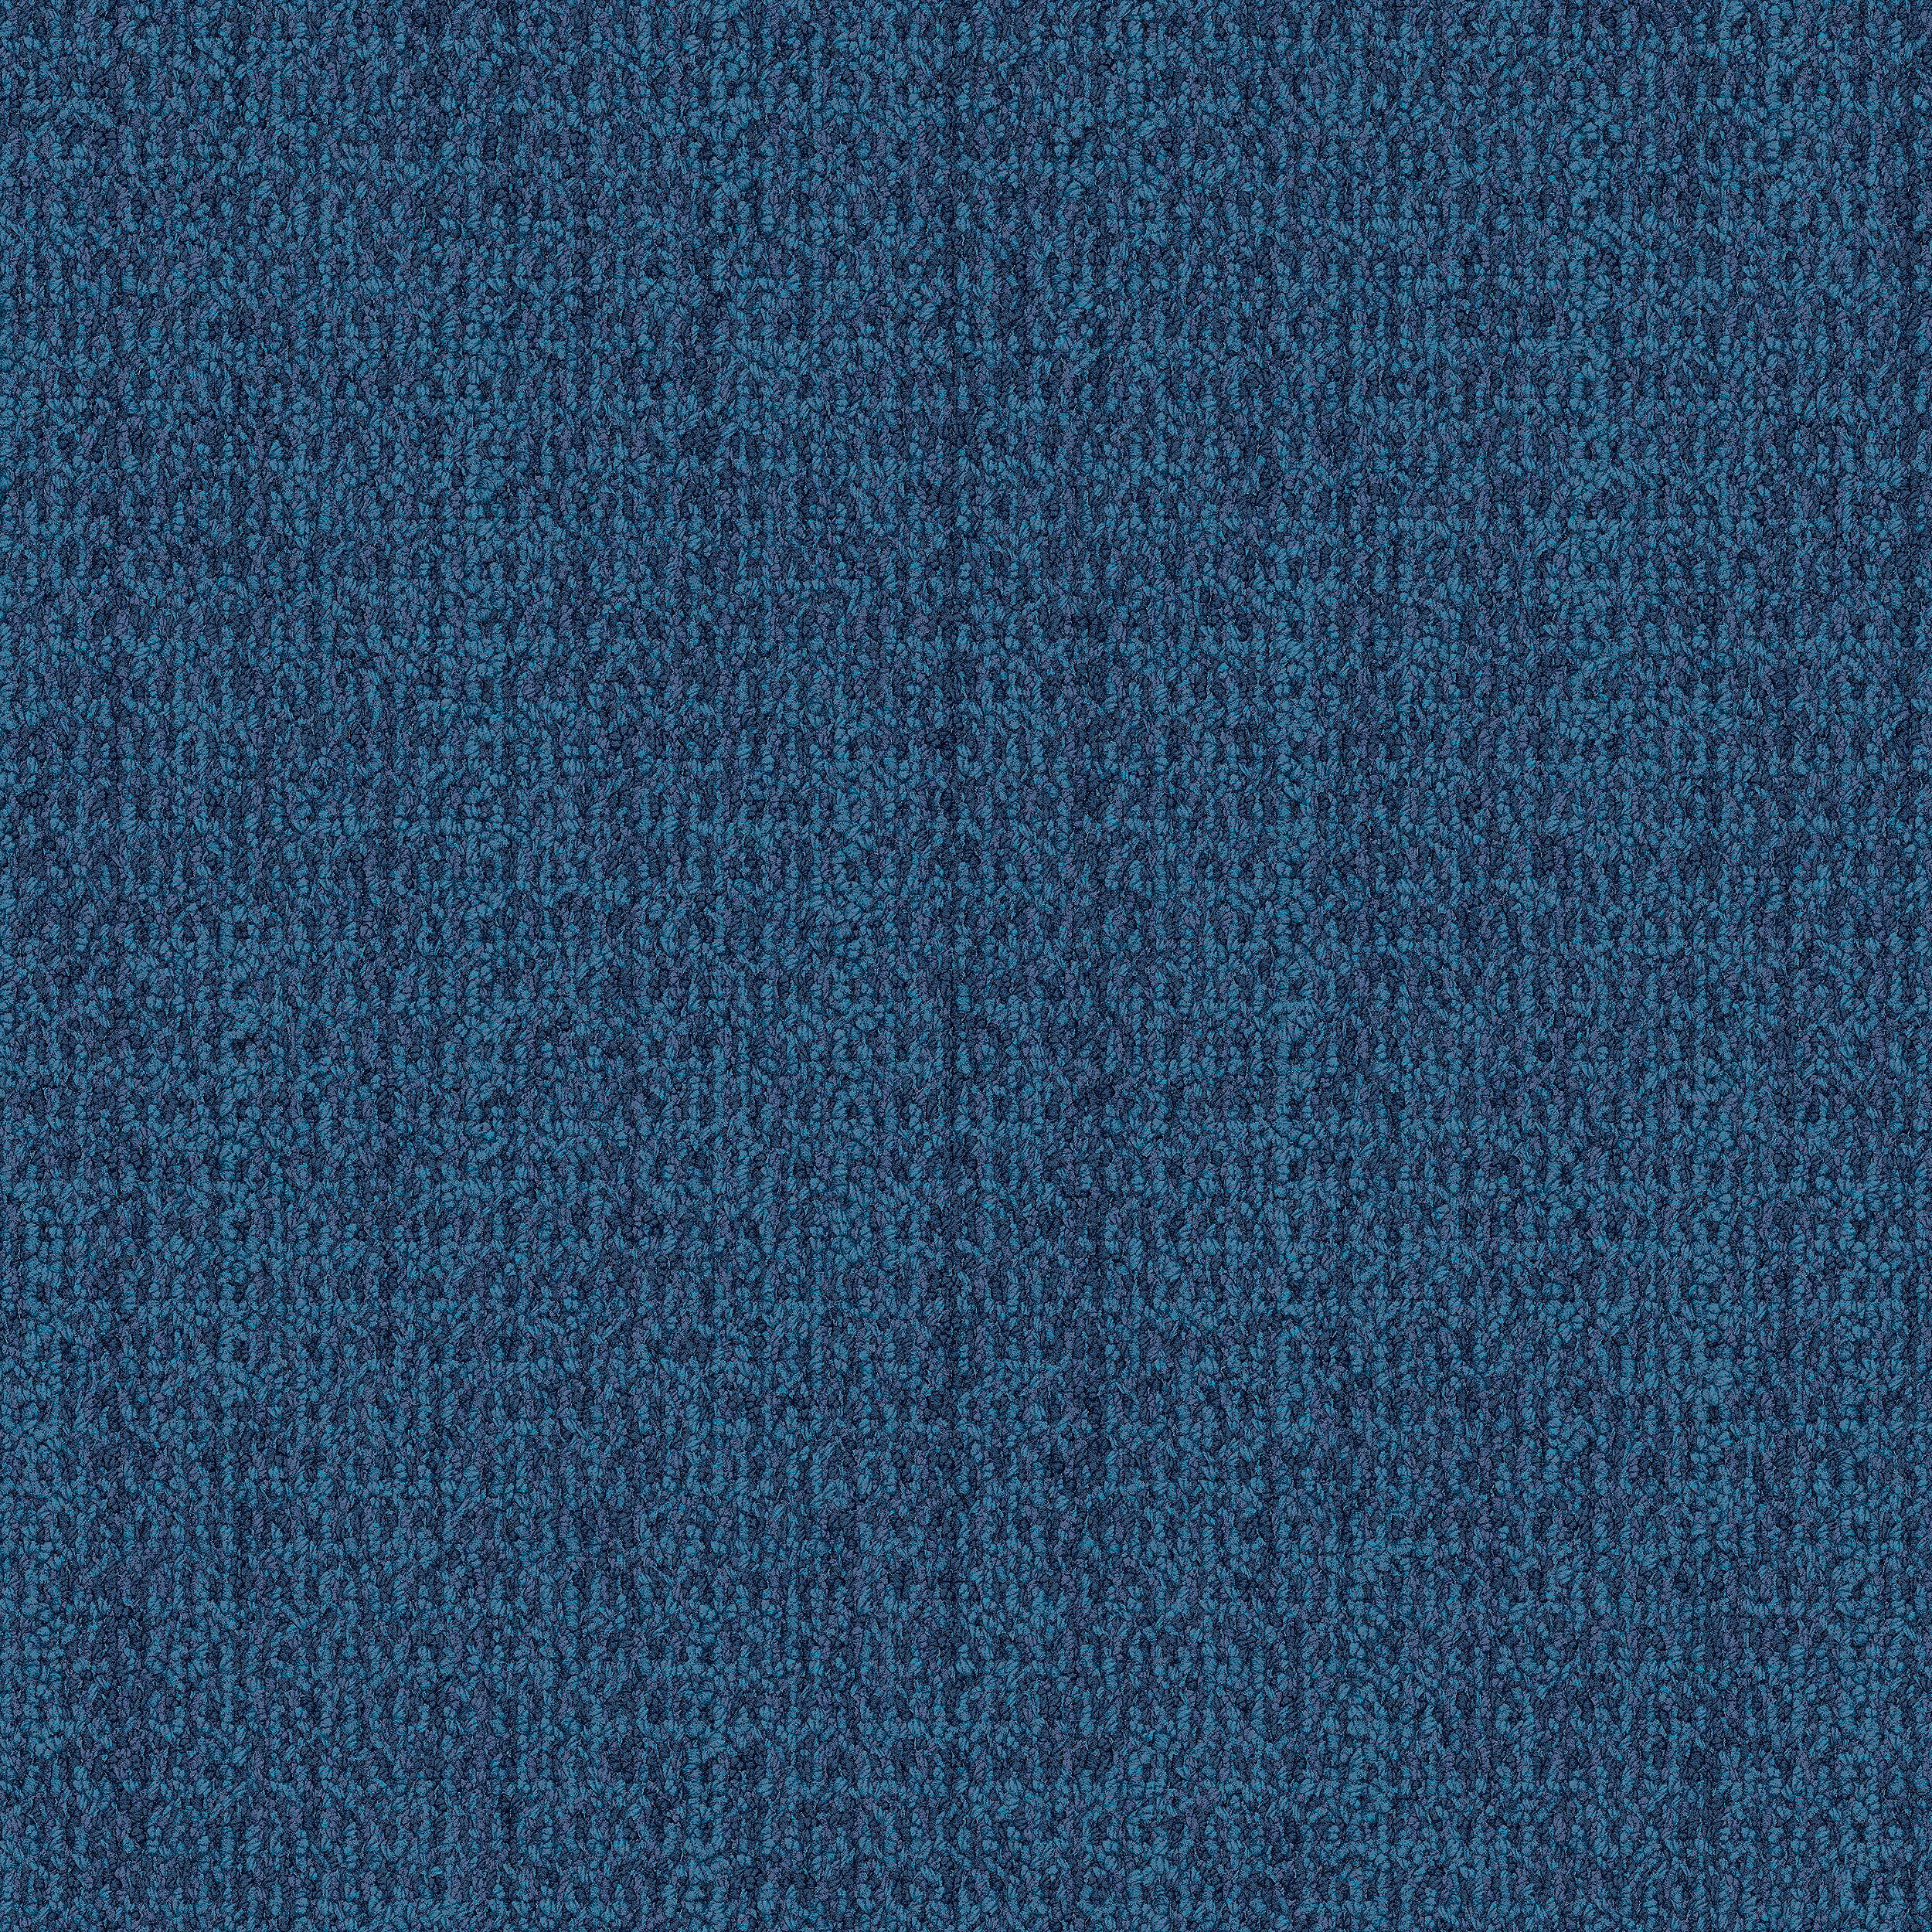 WG100 Carpet Tile In Ocean número de imagen 1